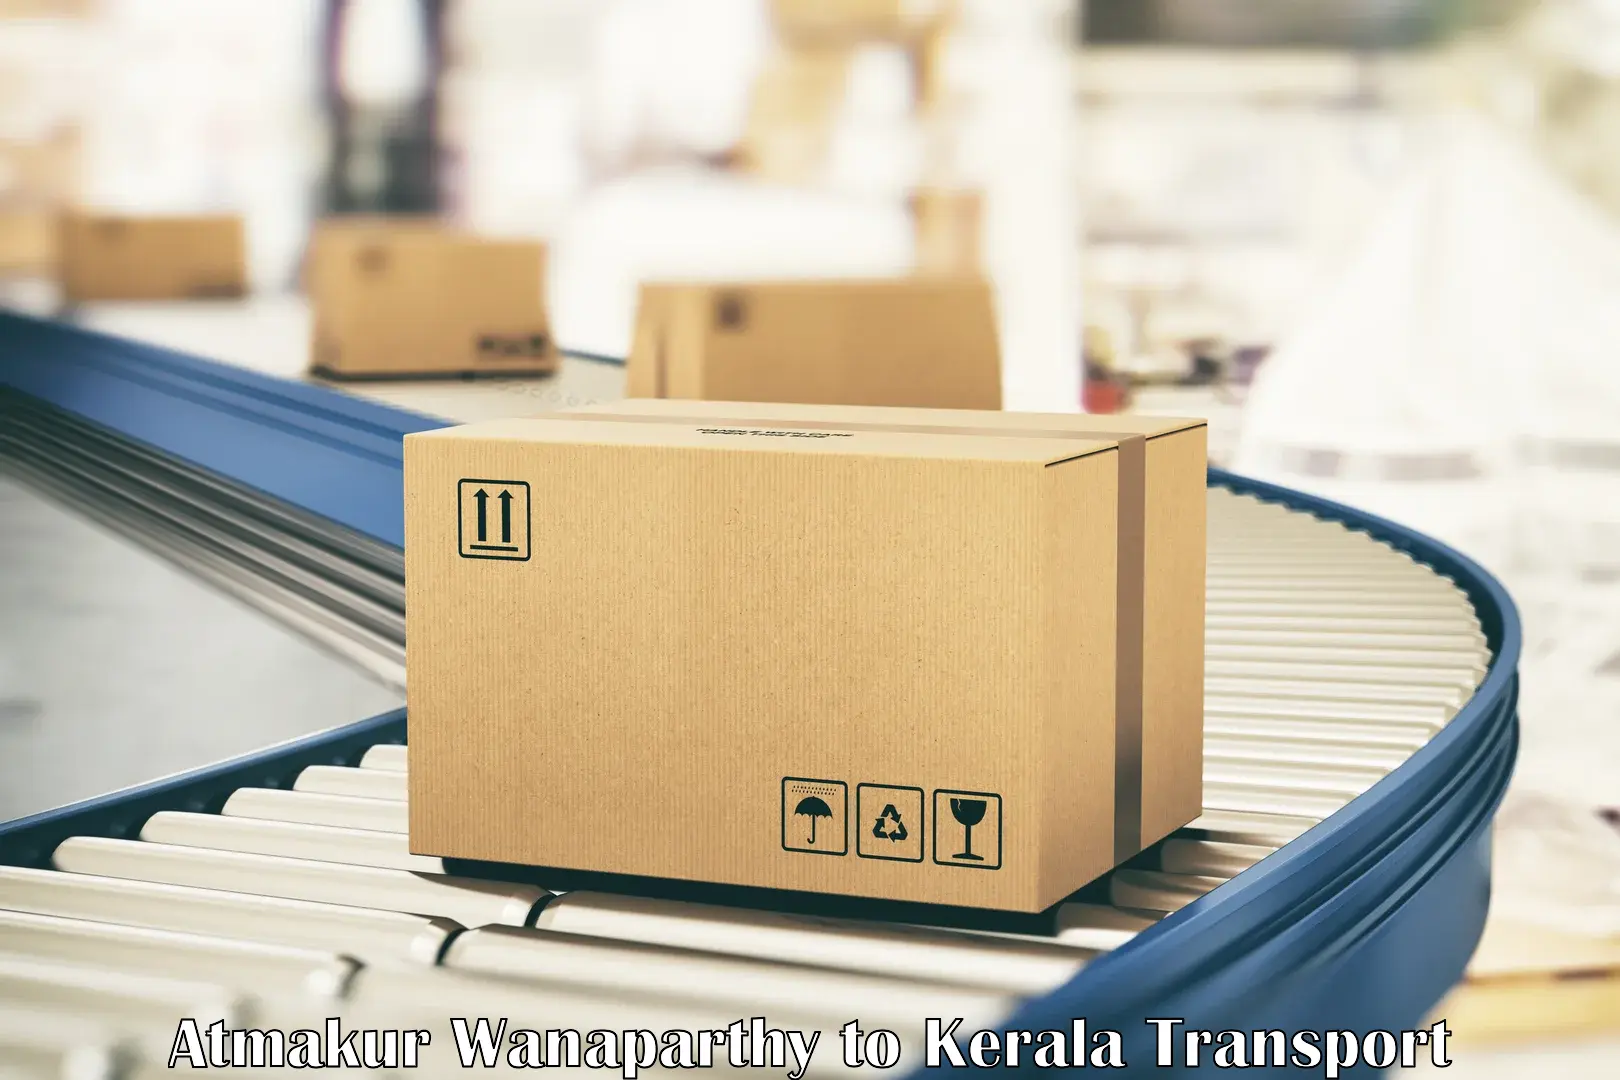 Furniture transport service Atmakur Wanaparthy to Kallikkad